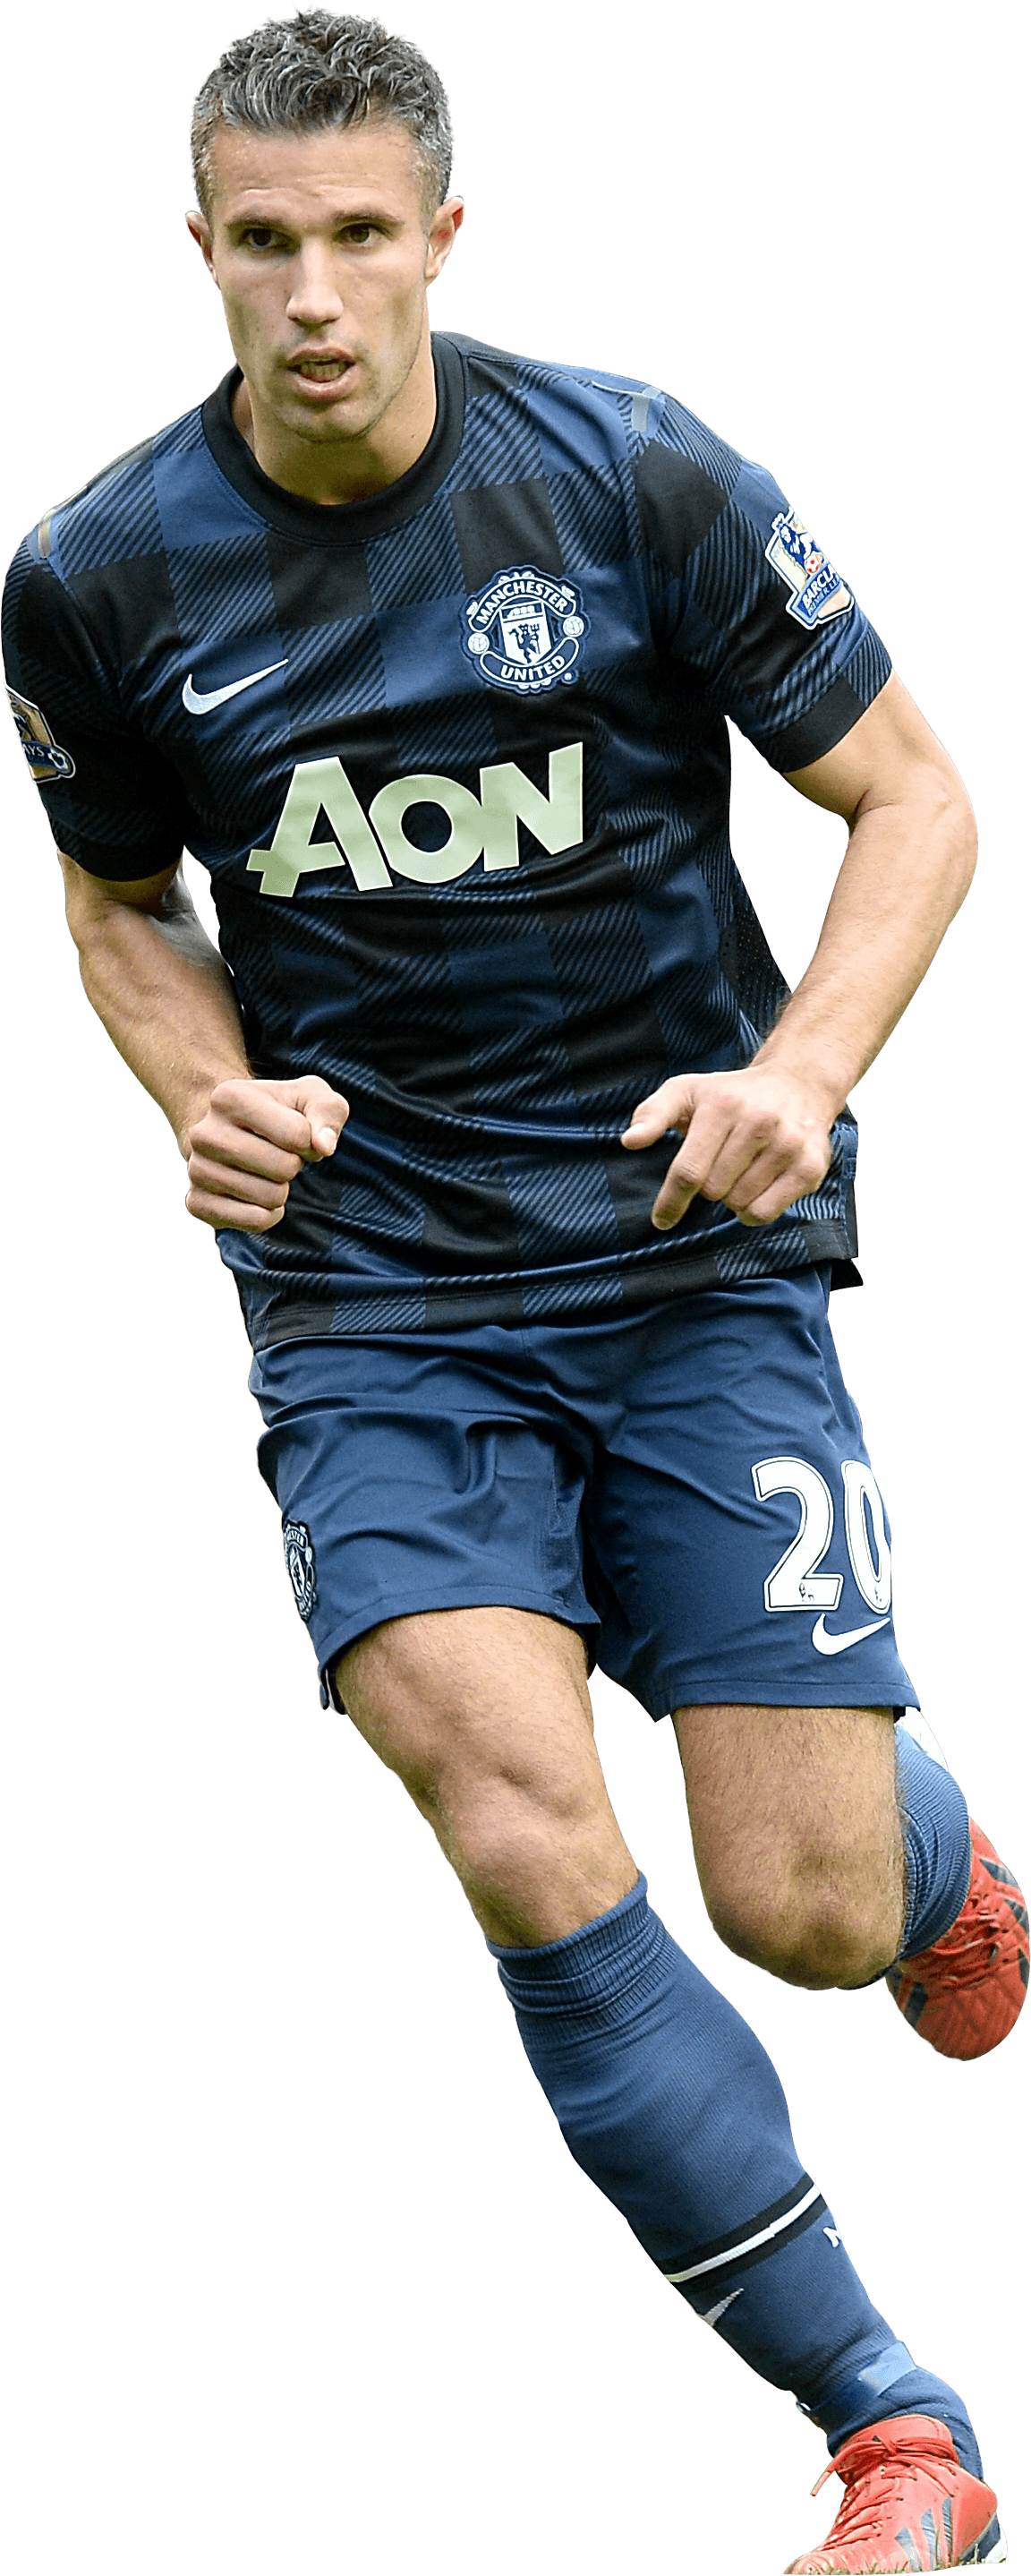 SoccerStarz Manchester United F.C. Robin Van Persie